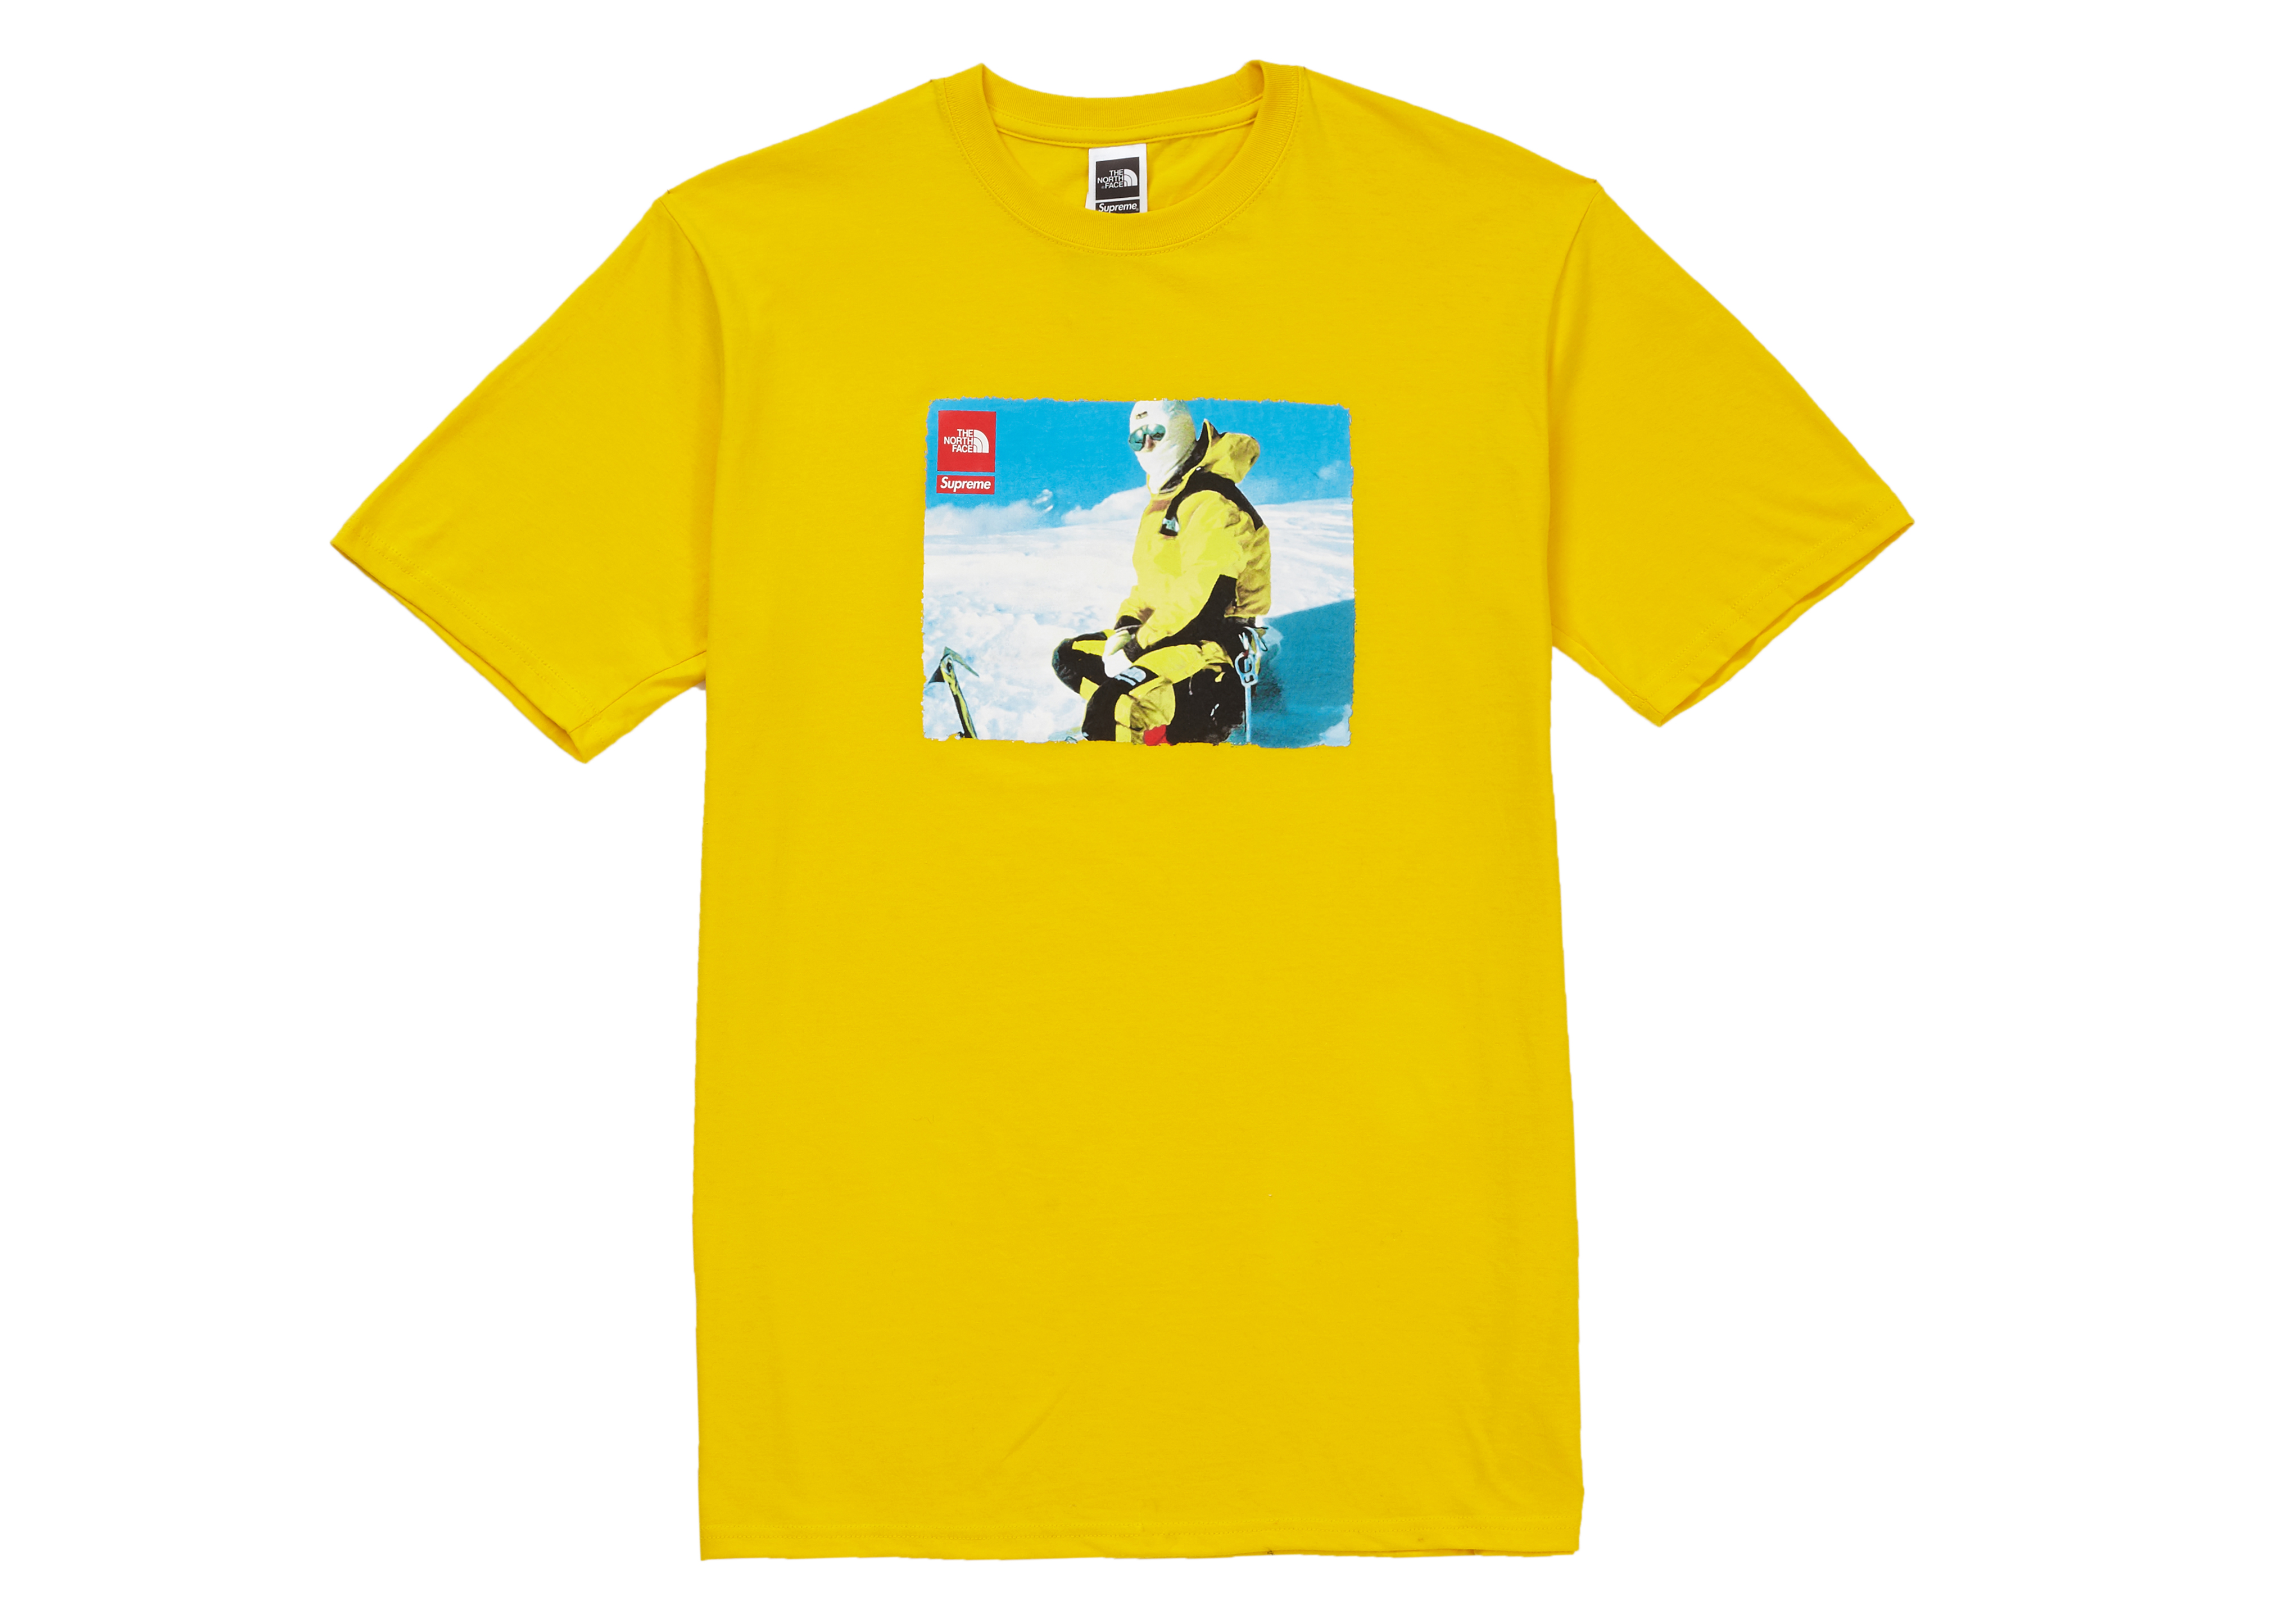 north face yellow shirt